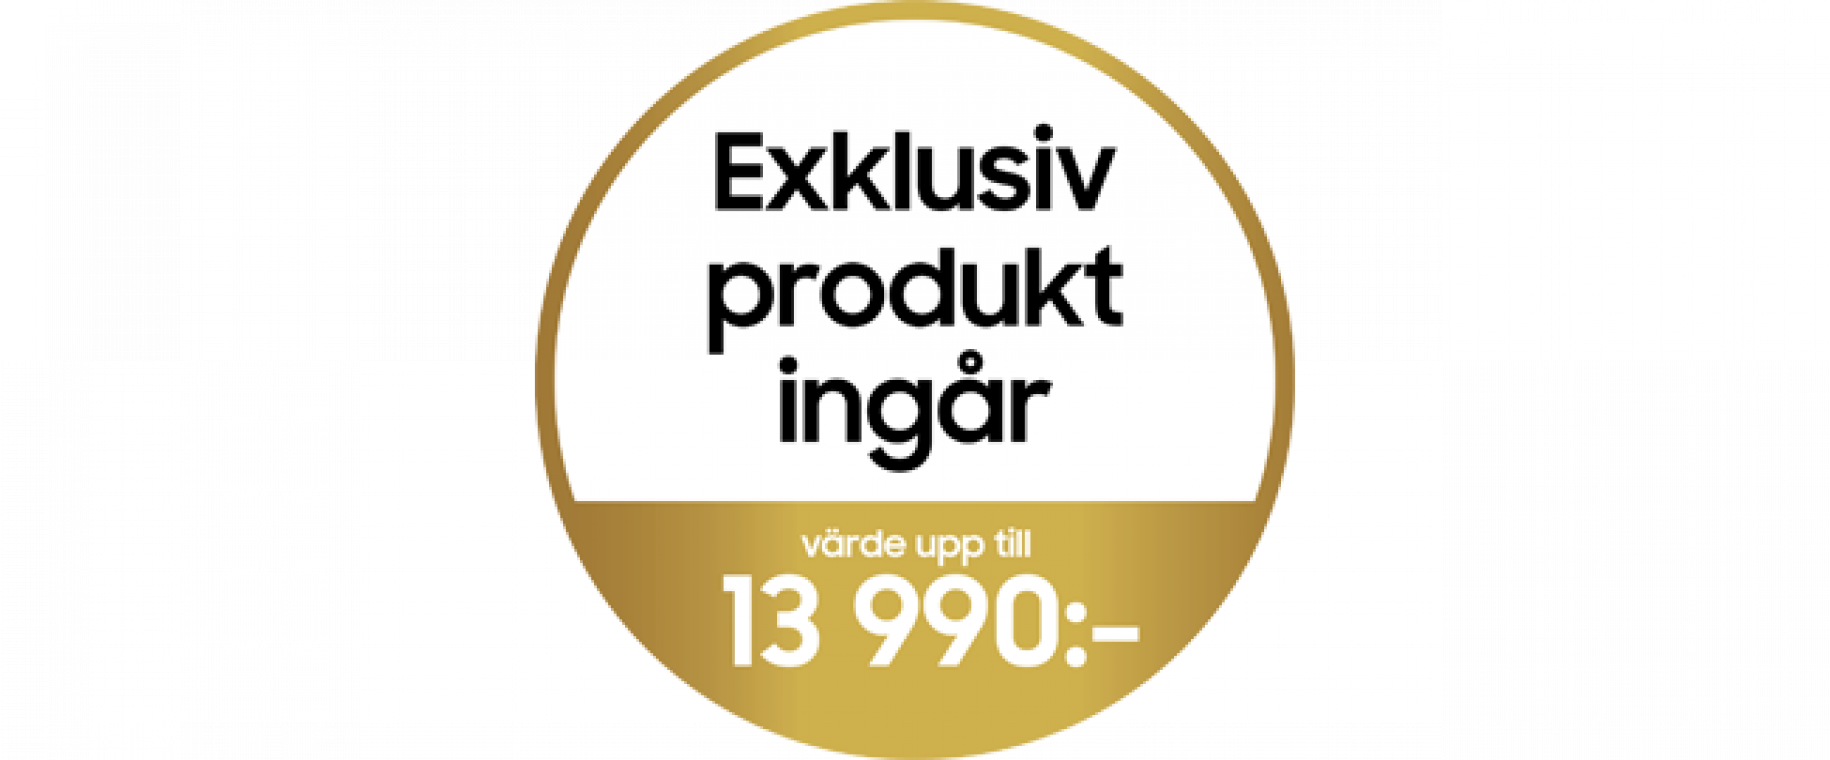 exklusiv_produkt_ingar1.png